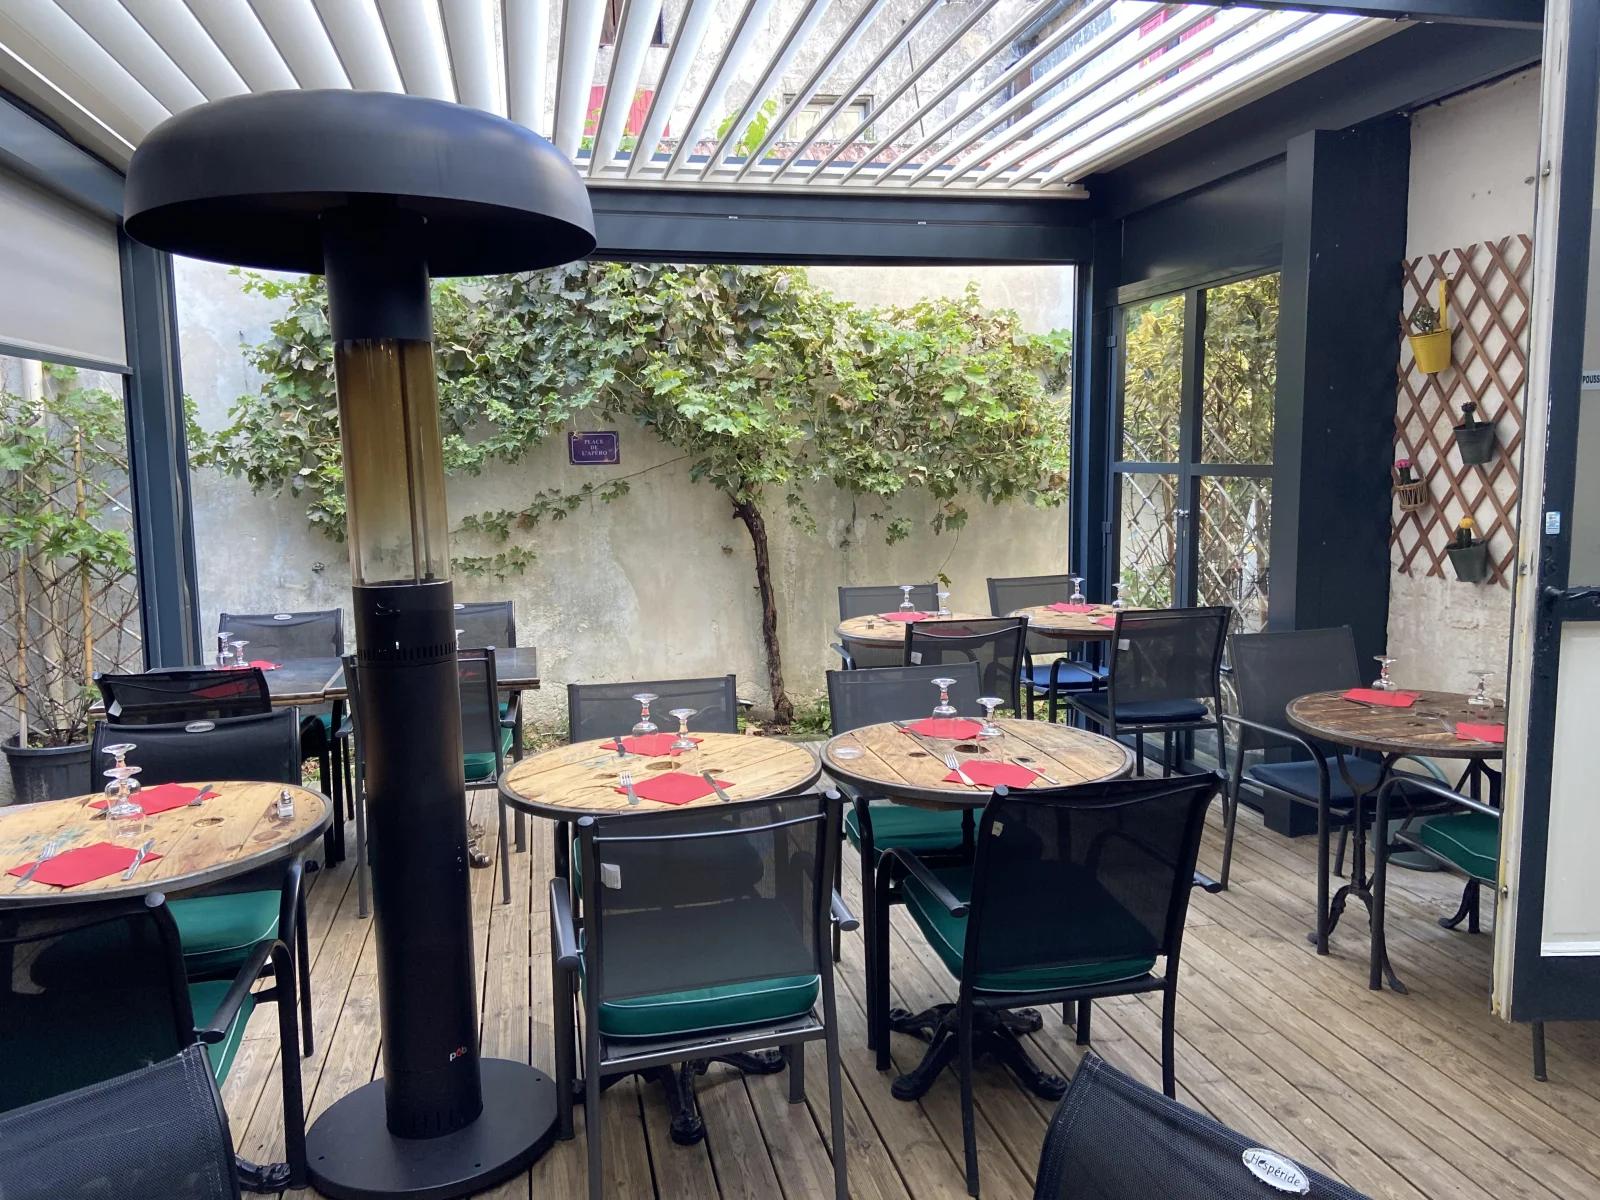 Comedor dentro Restaurante y bar de vinos con terraza - 2